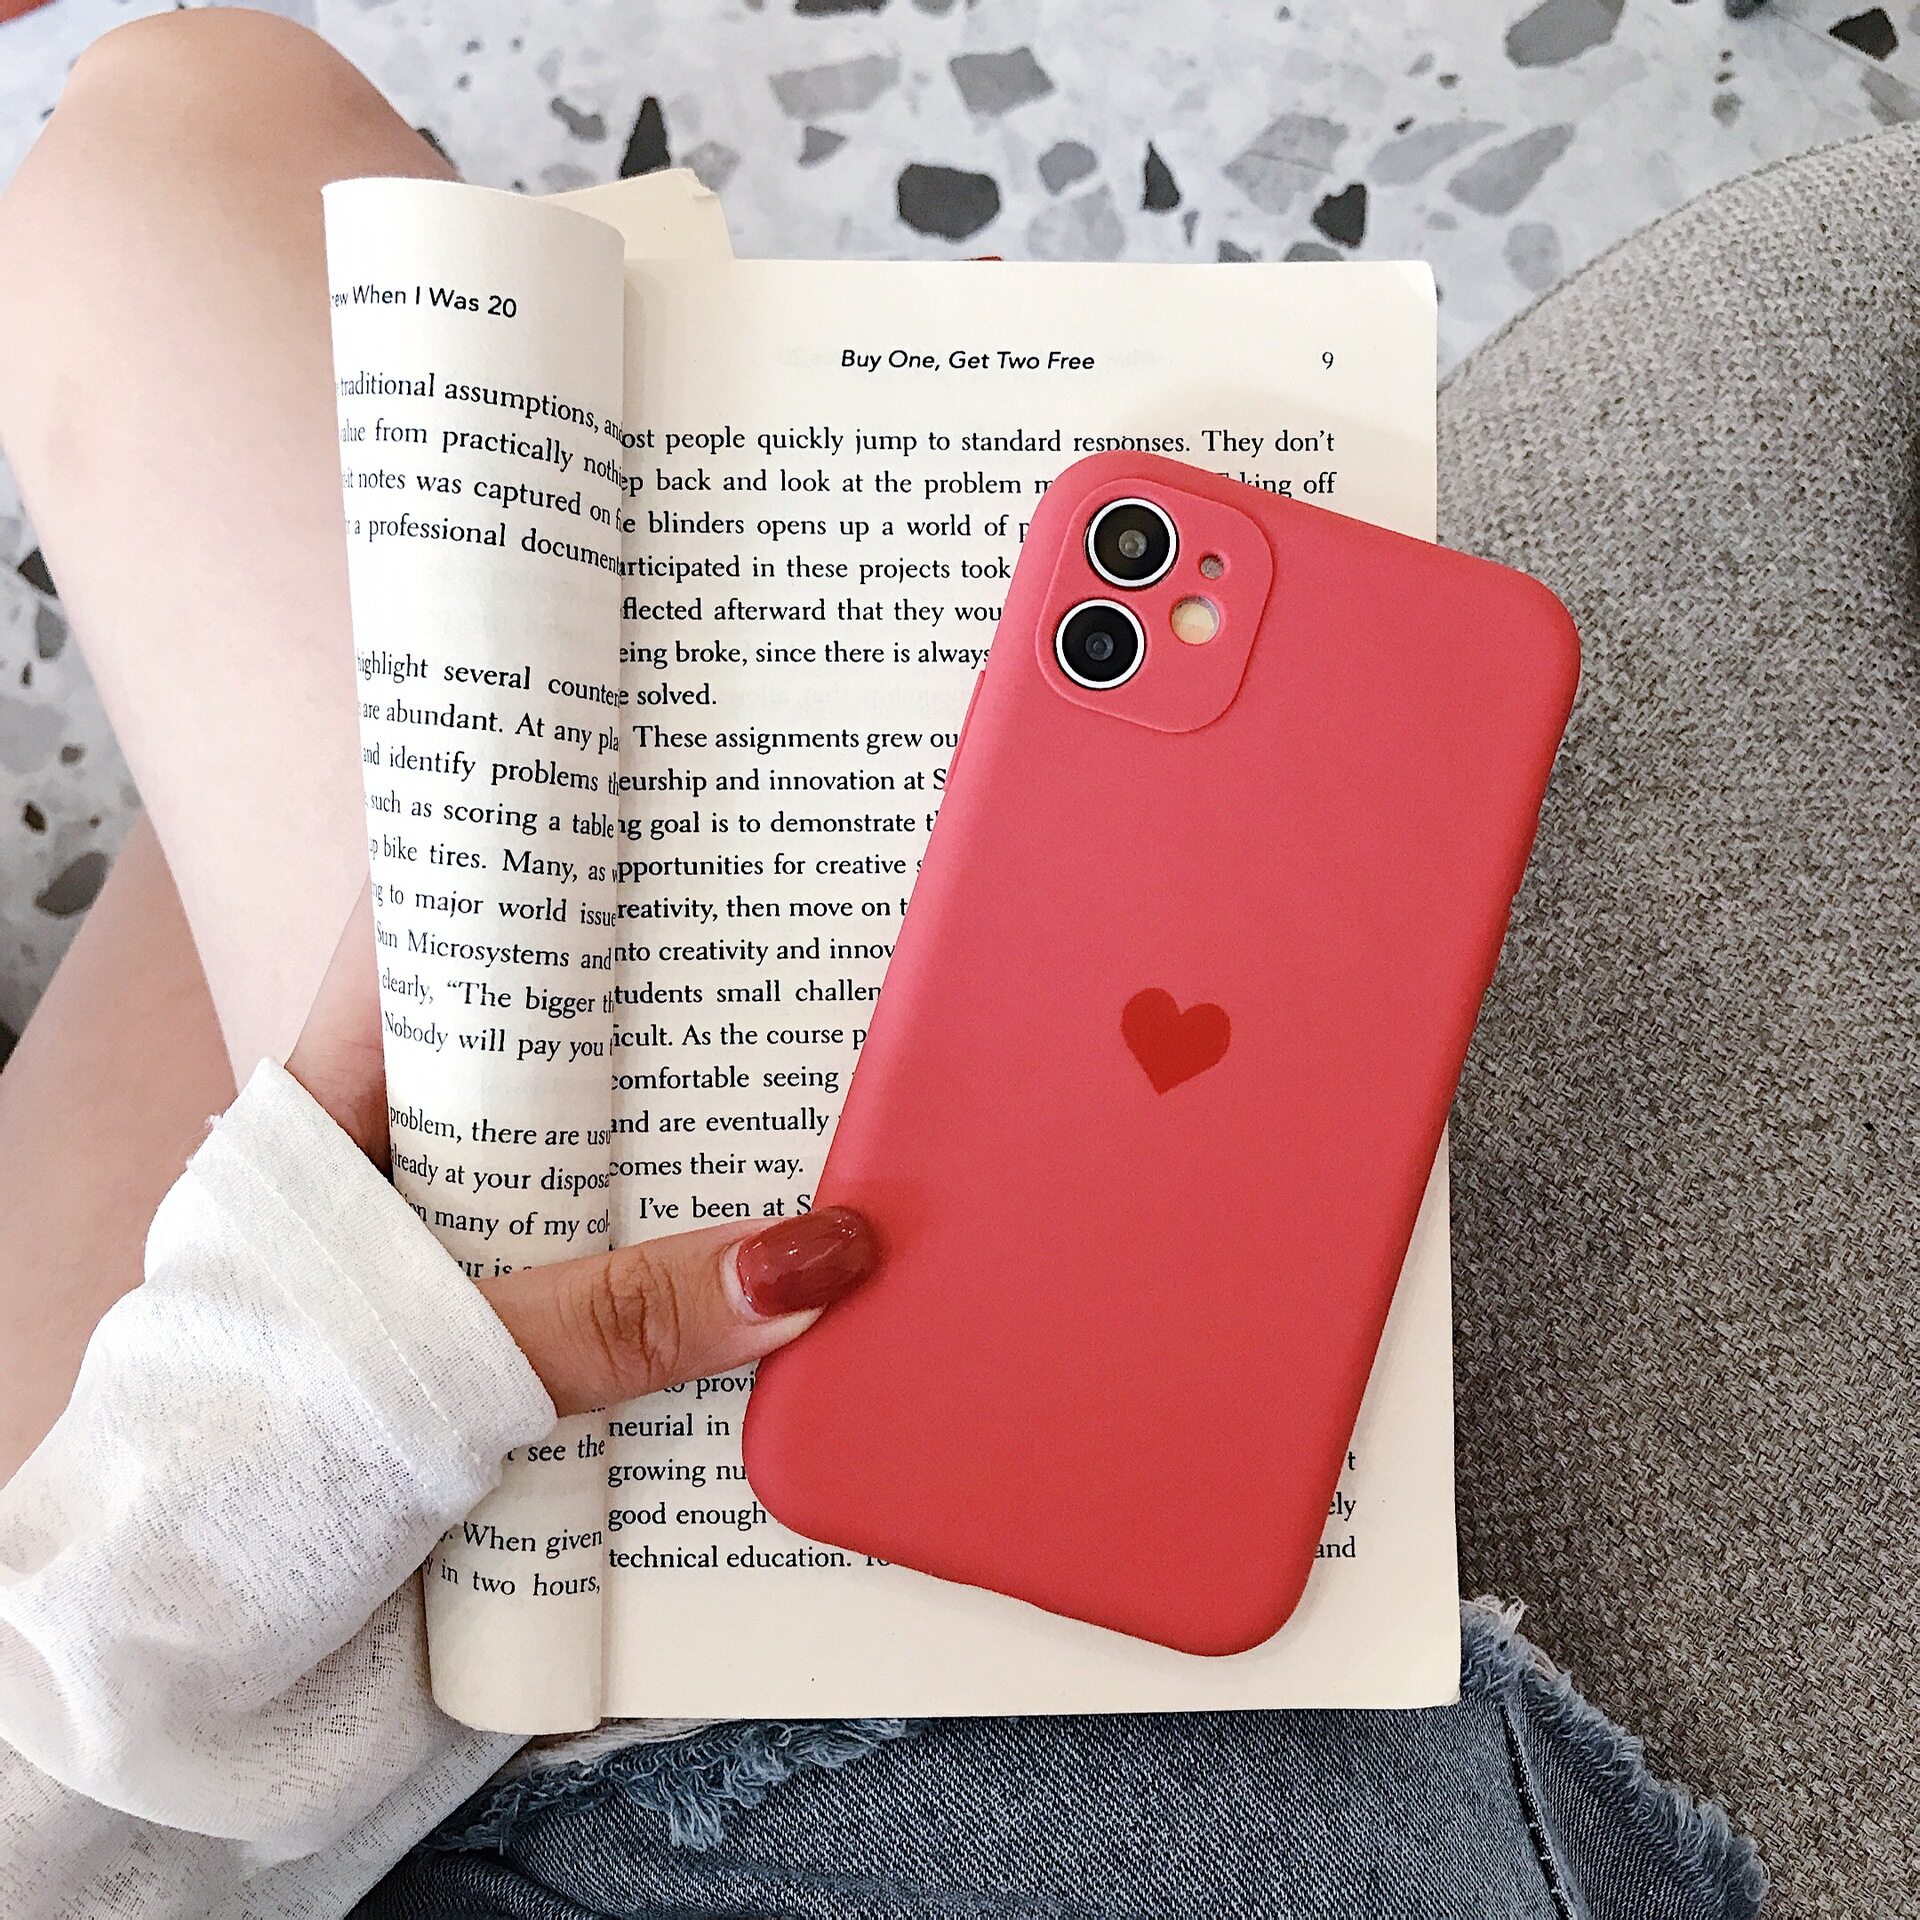 [hao fashion] เคสโทรศัพท์มือถือ เคสไอโฟน เคสมือถือ เคสราคาถูก เคสซิลิโคนนิ่ม คลุมขอบกล้องหลัง สำหรับไอโฟน12 12 Pro Max 12 11 / X / XR / max HF0174 ตระกูลสี camellia red love heart รูปแบบรุ่นที่ีรองรับ iPhone12